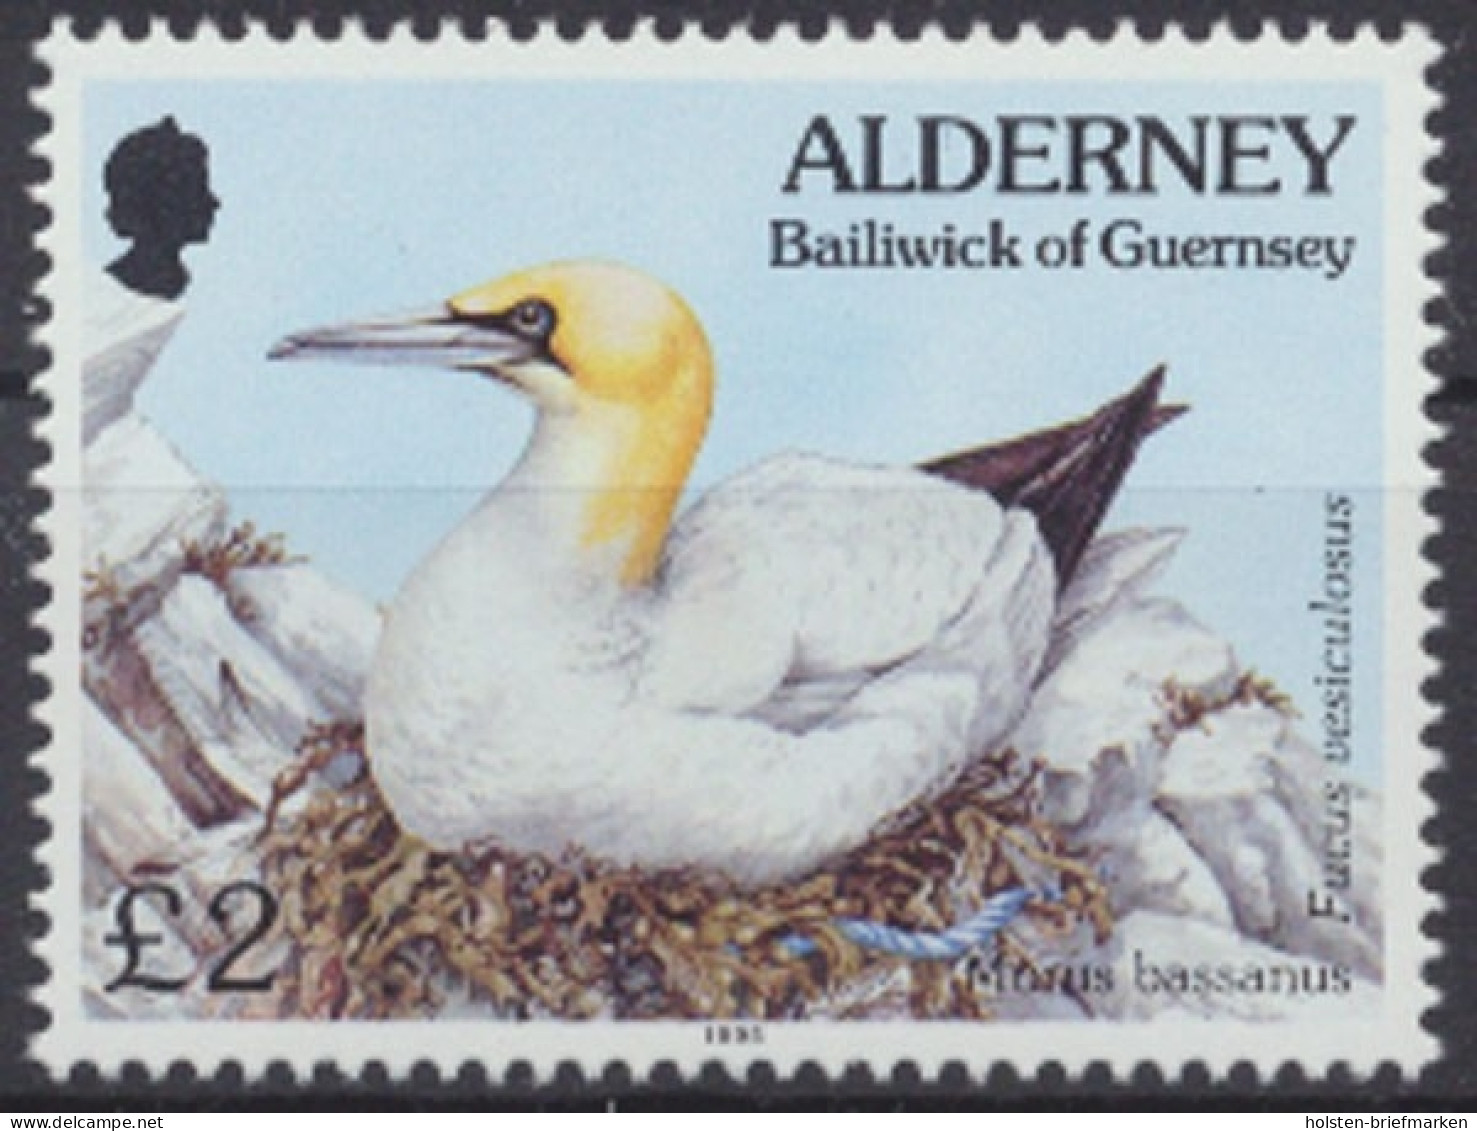 Alderney, Vögel, MiNr. 82, Postfrisch - Alderney